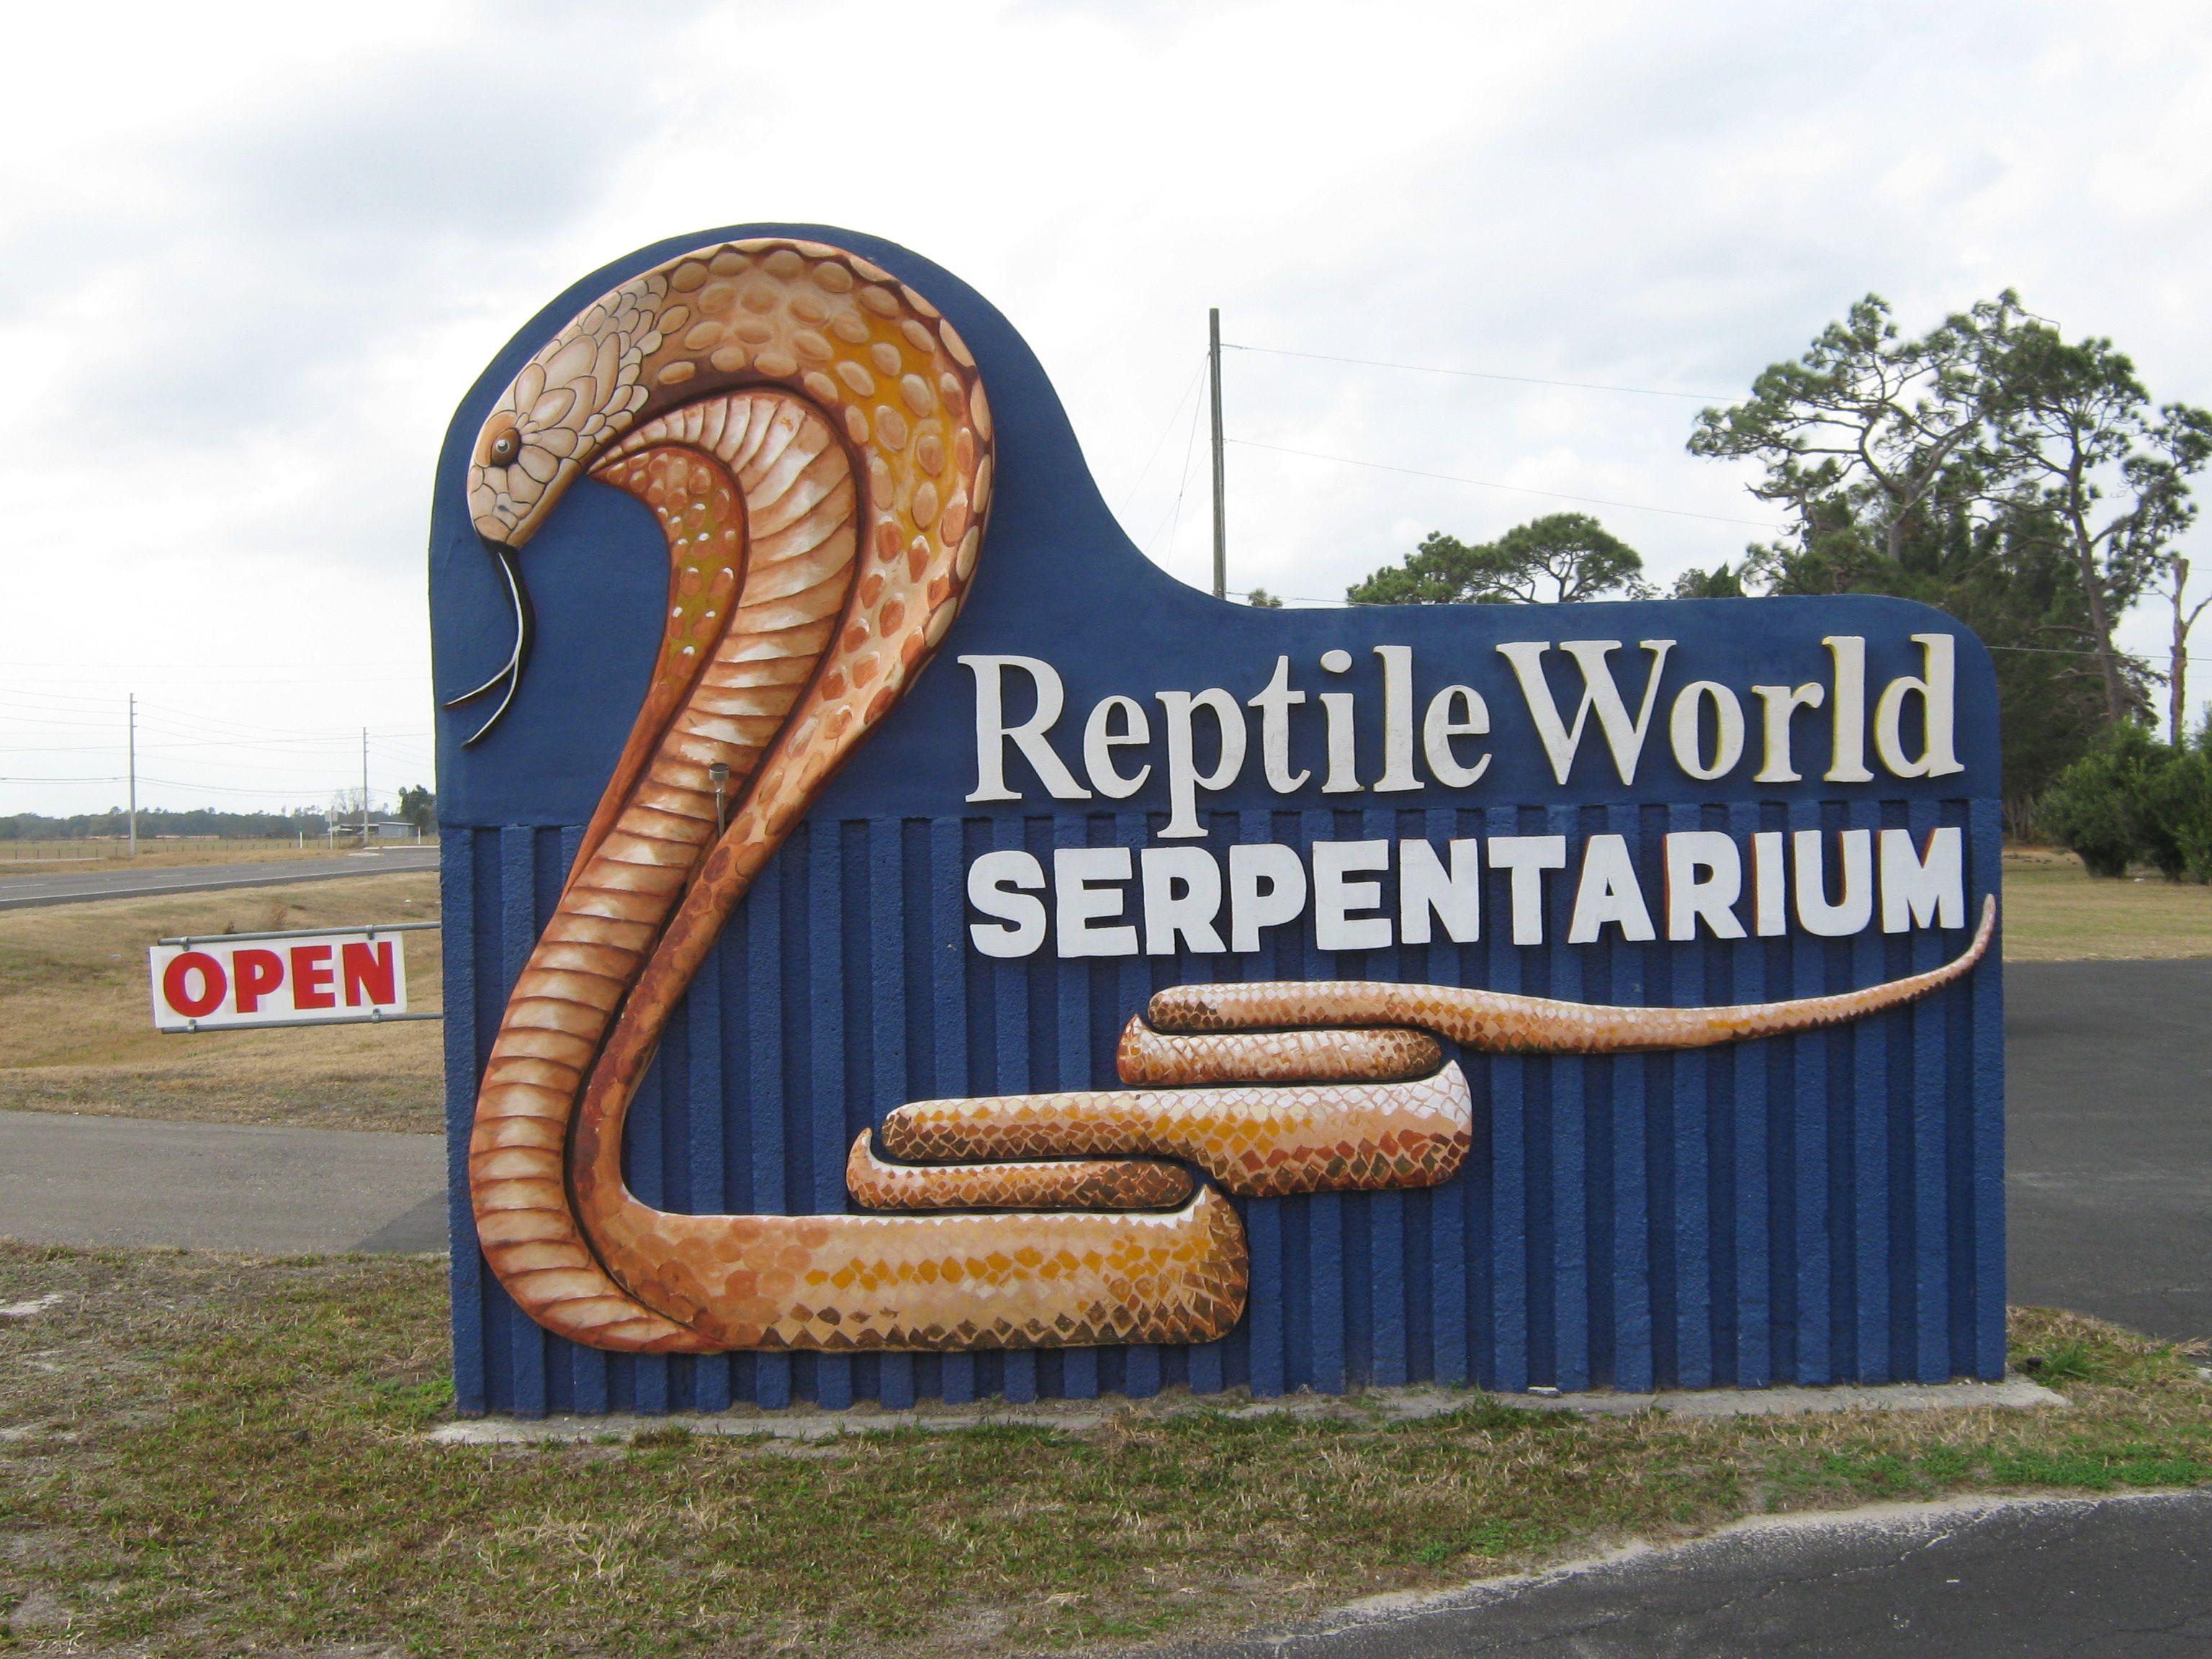 Serpentarium Logo - Reptile World Serpentarium